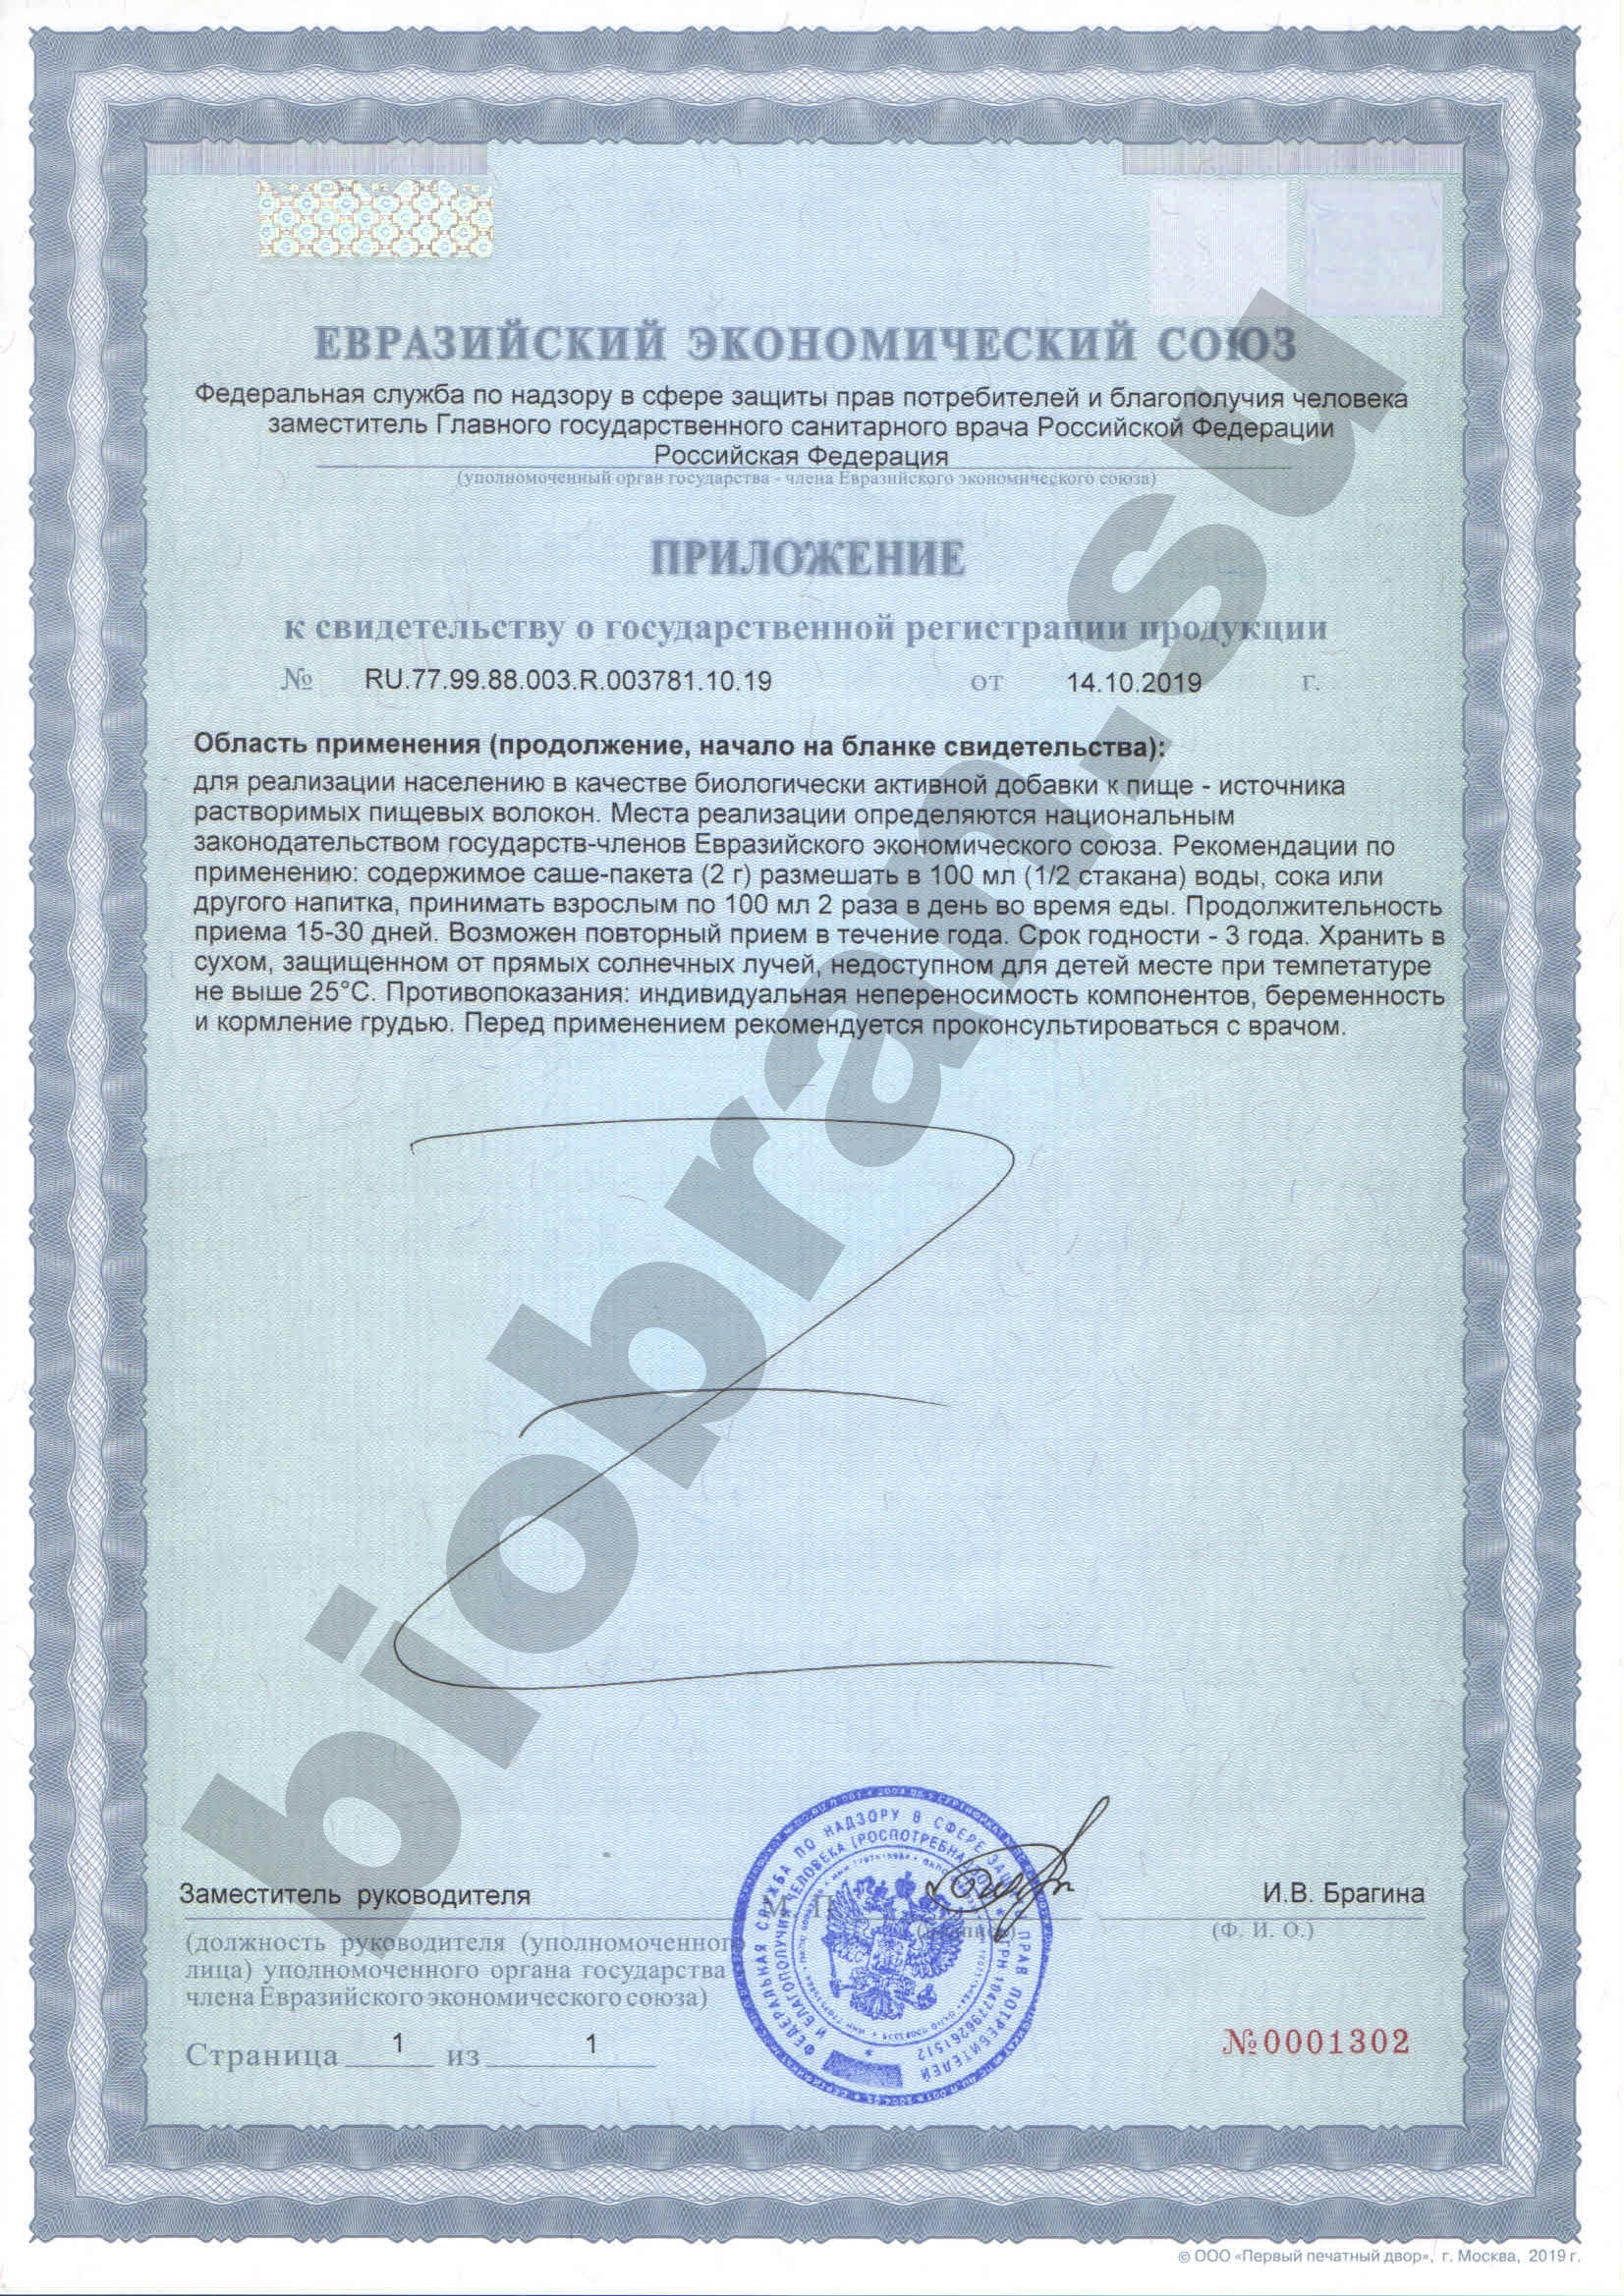 Свидетельство о государственной регистрации Биобран 250